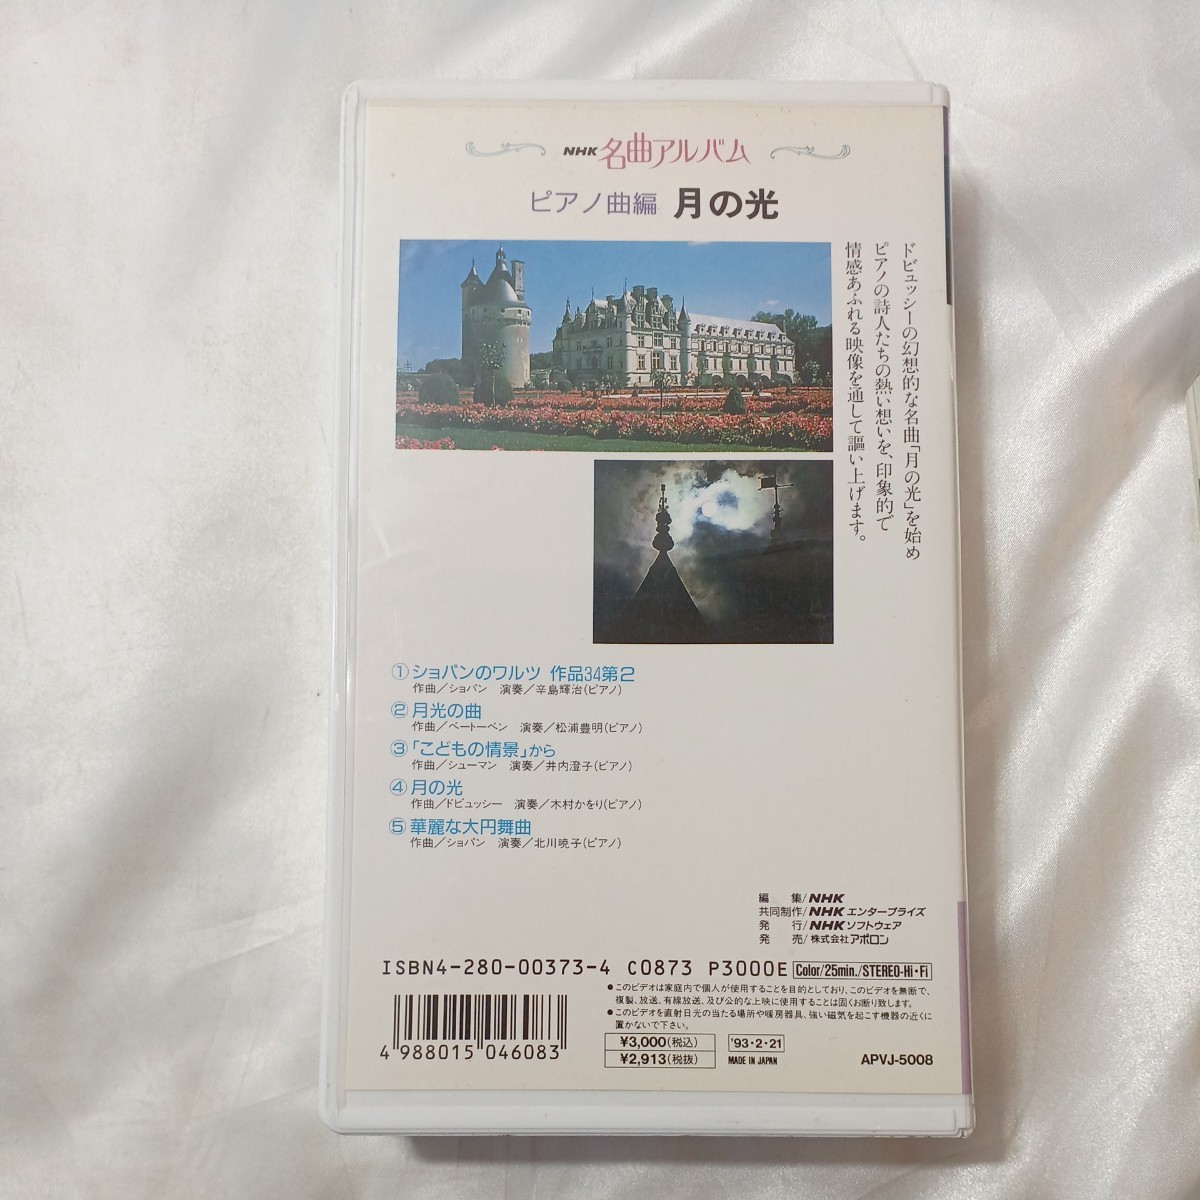 zvd-03!NHK шедевр альбом фортепианная пьеса сборник месяц. свет NHK видео VHS 1993/02/21 25 минут 